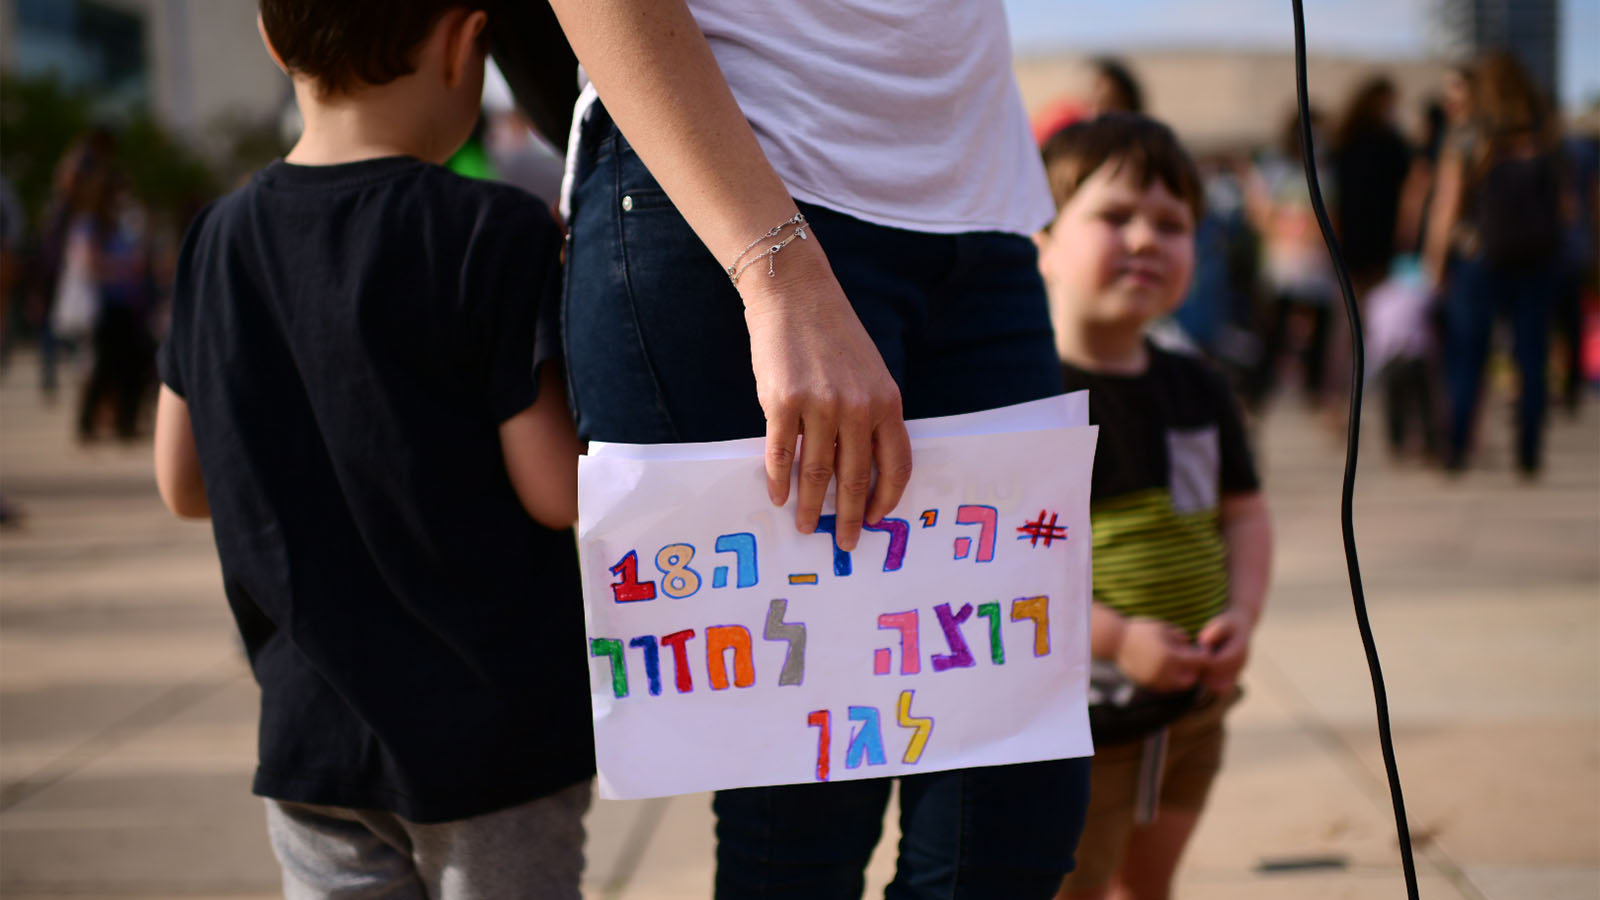 הפגנת הורים נגד מתווה הממשלה לפתיחת מעונות היום בכיכר הבימה, 11 במאי 2020 (צילום: תומר נויברג/פלאש90)